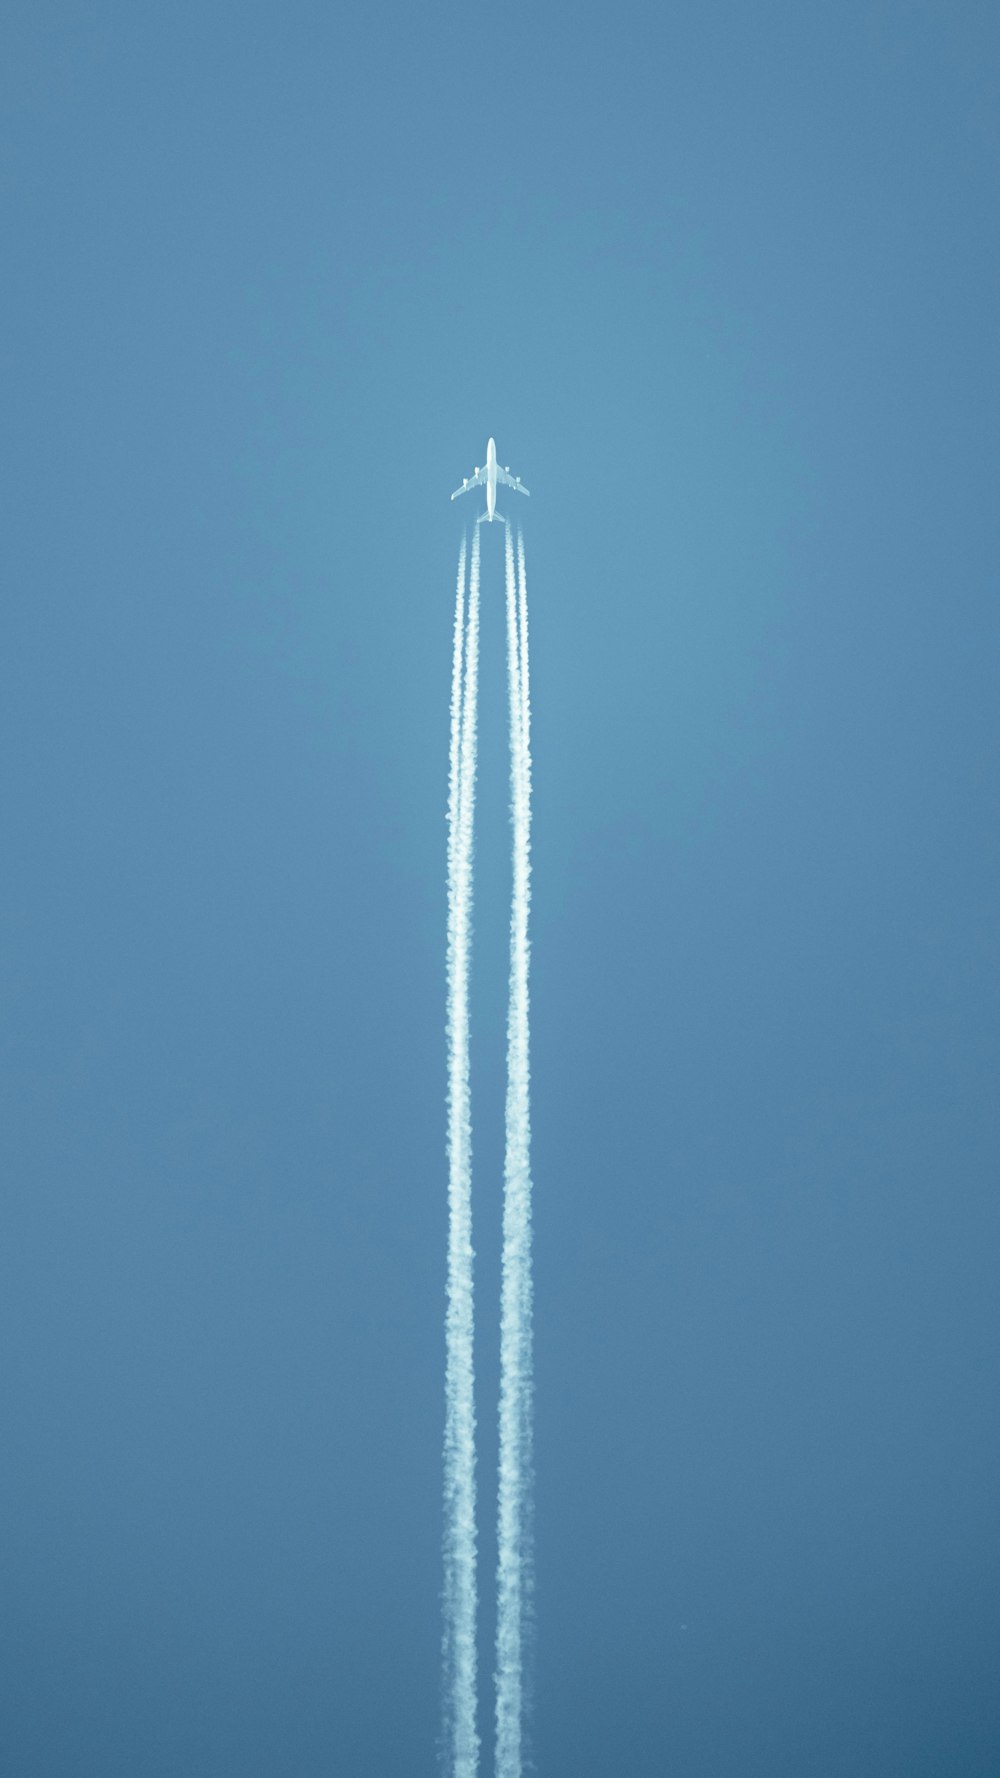 Un avión volando en el cielo dejando un rastro de humo detrás de él